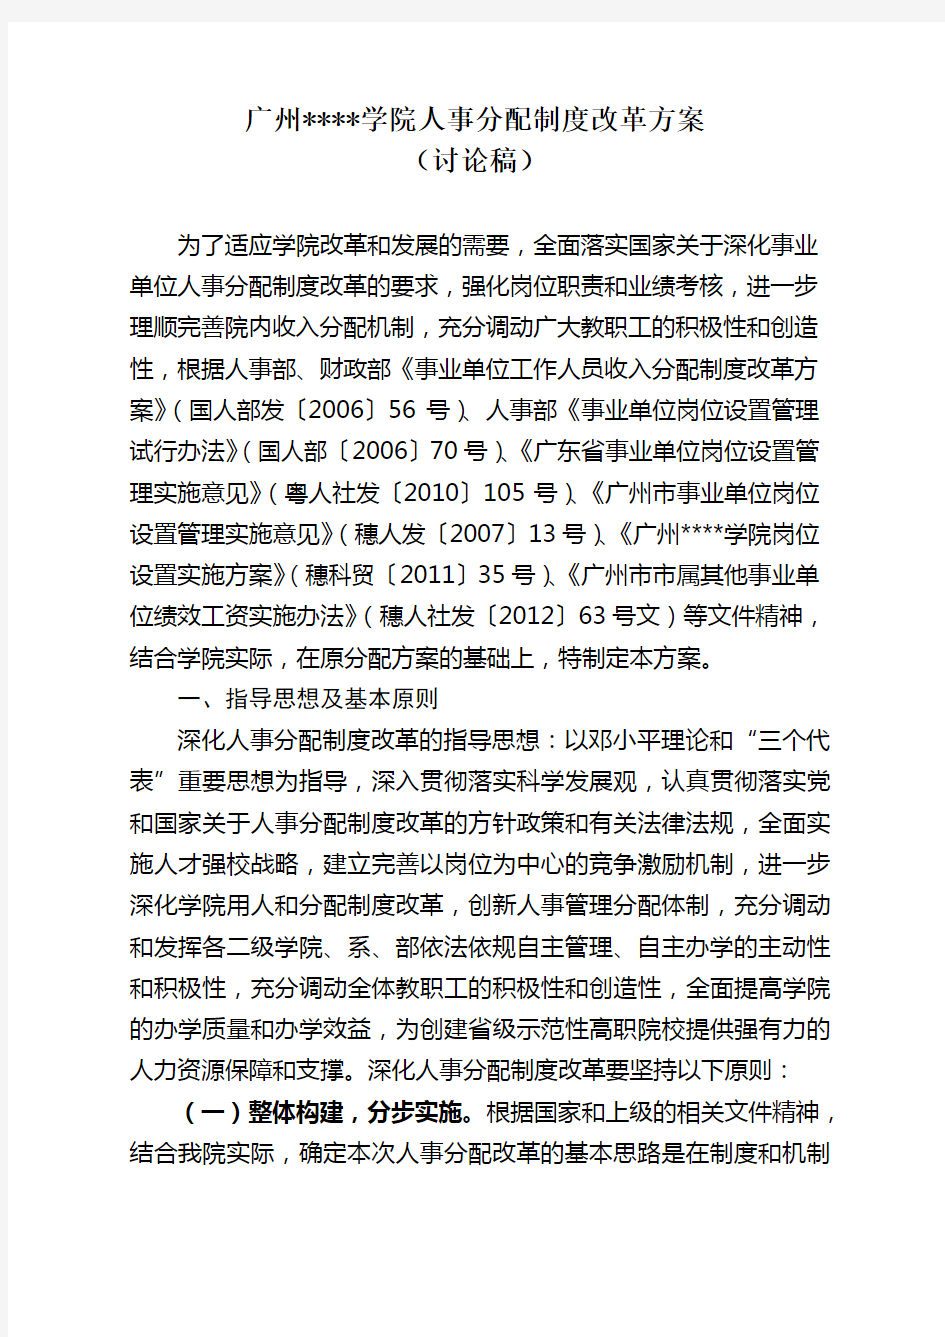 广州某学院人事分配制度改革方案(doc 73页)